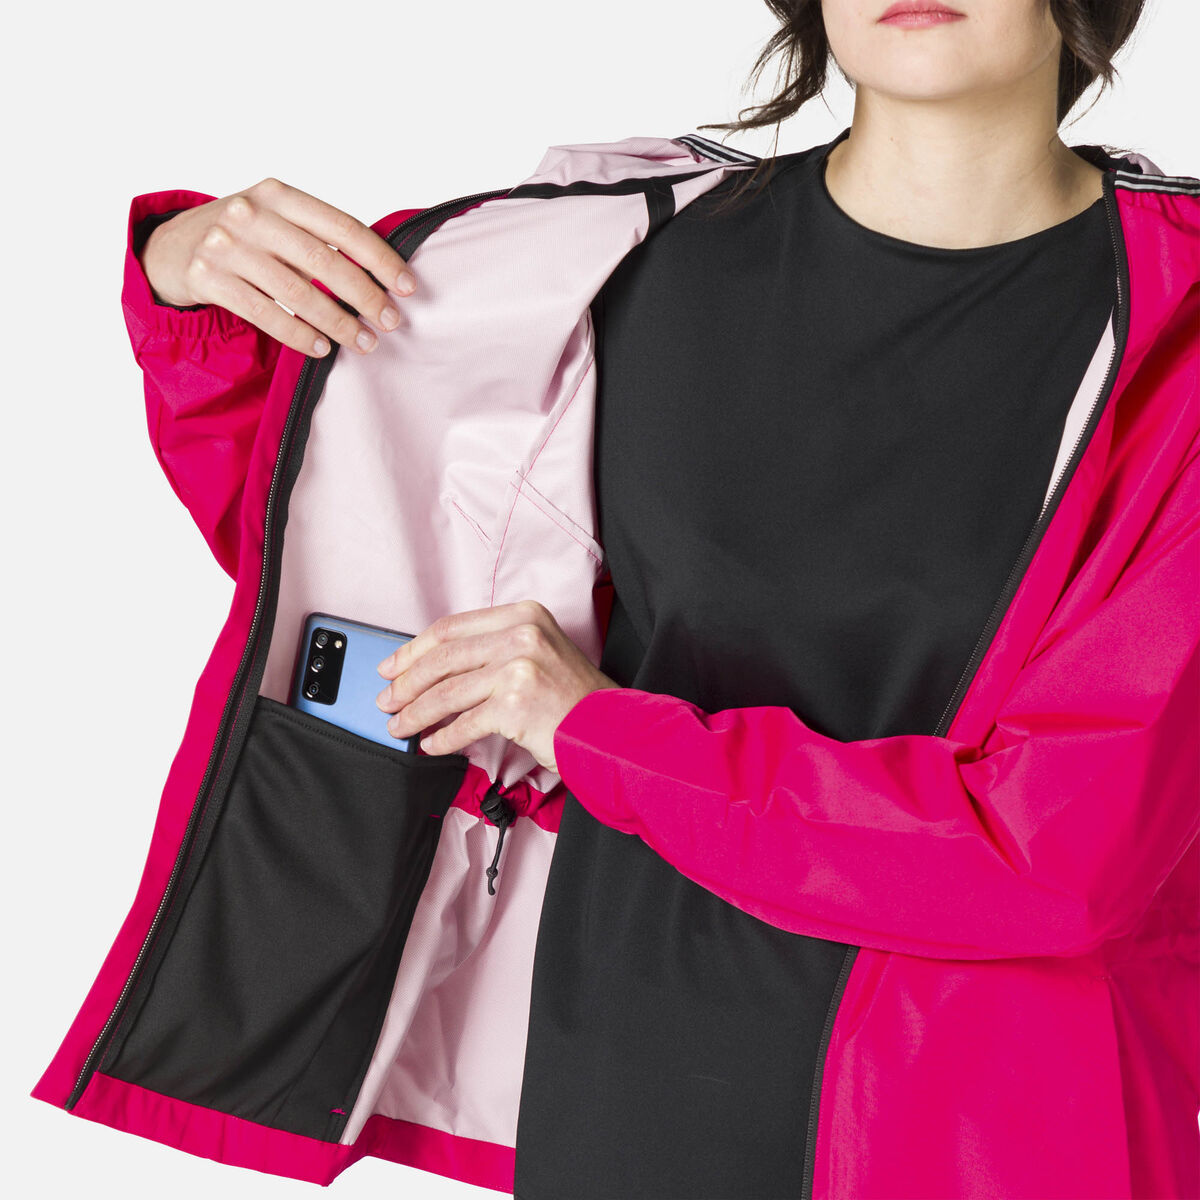 Rossignol Women's Active Rain Jacket pinkpurple